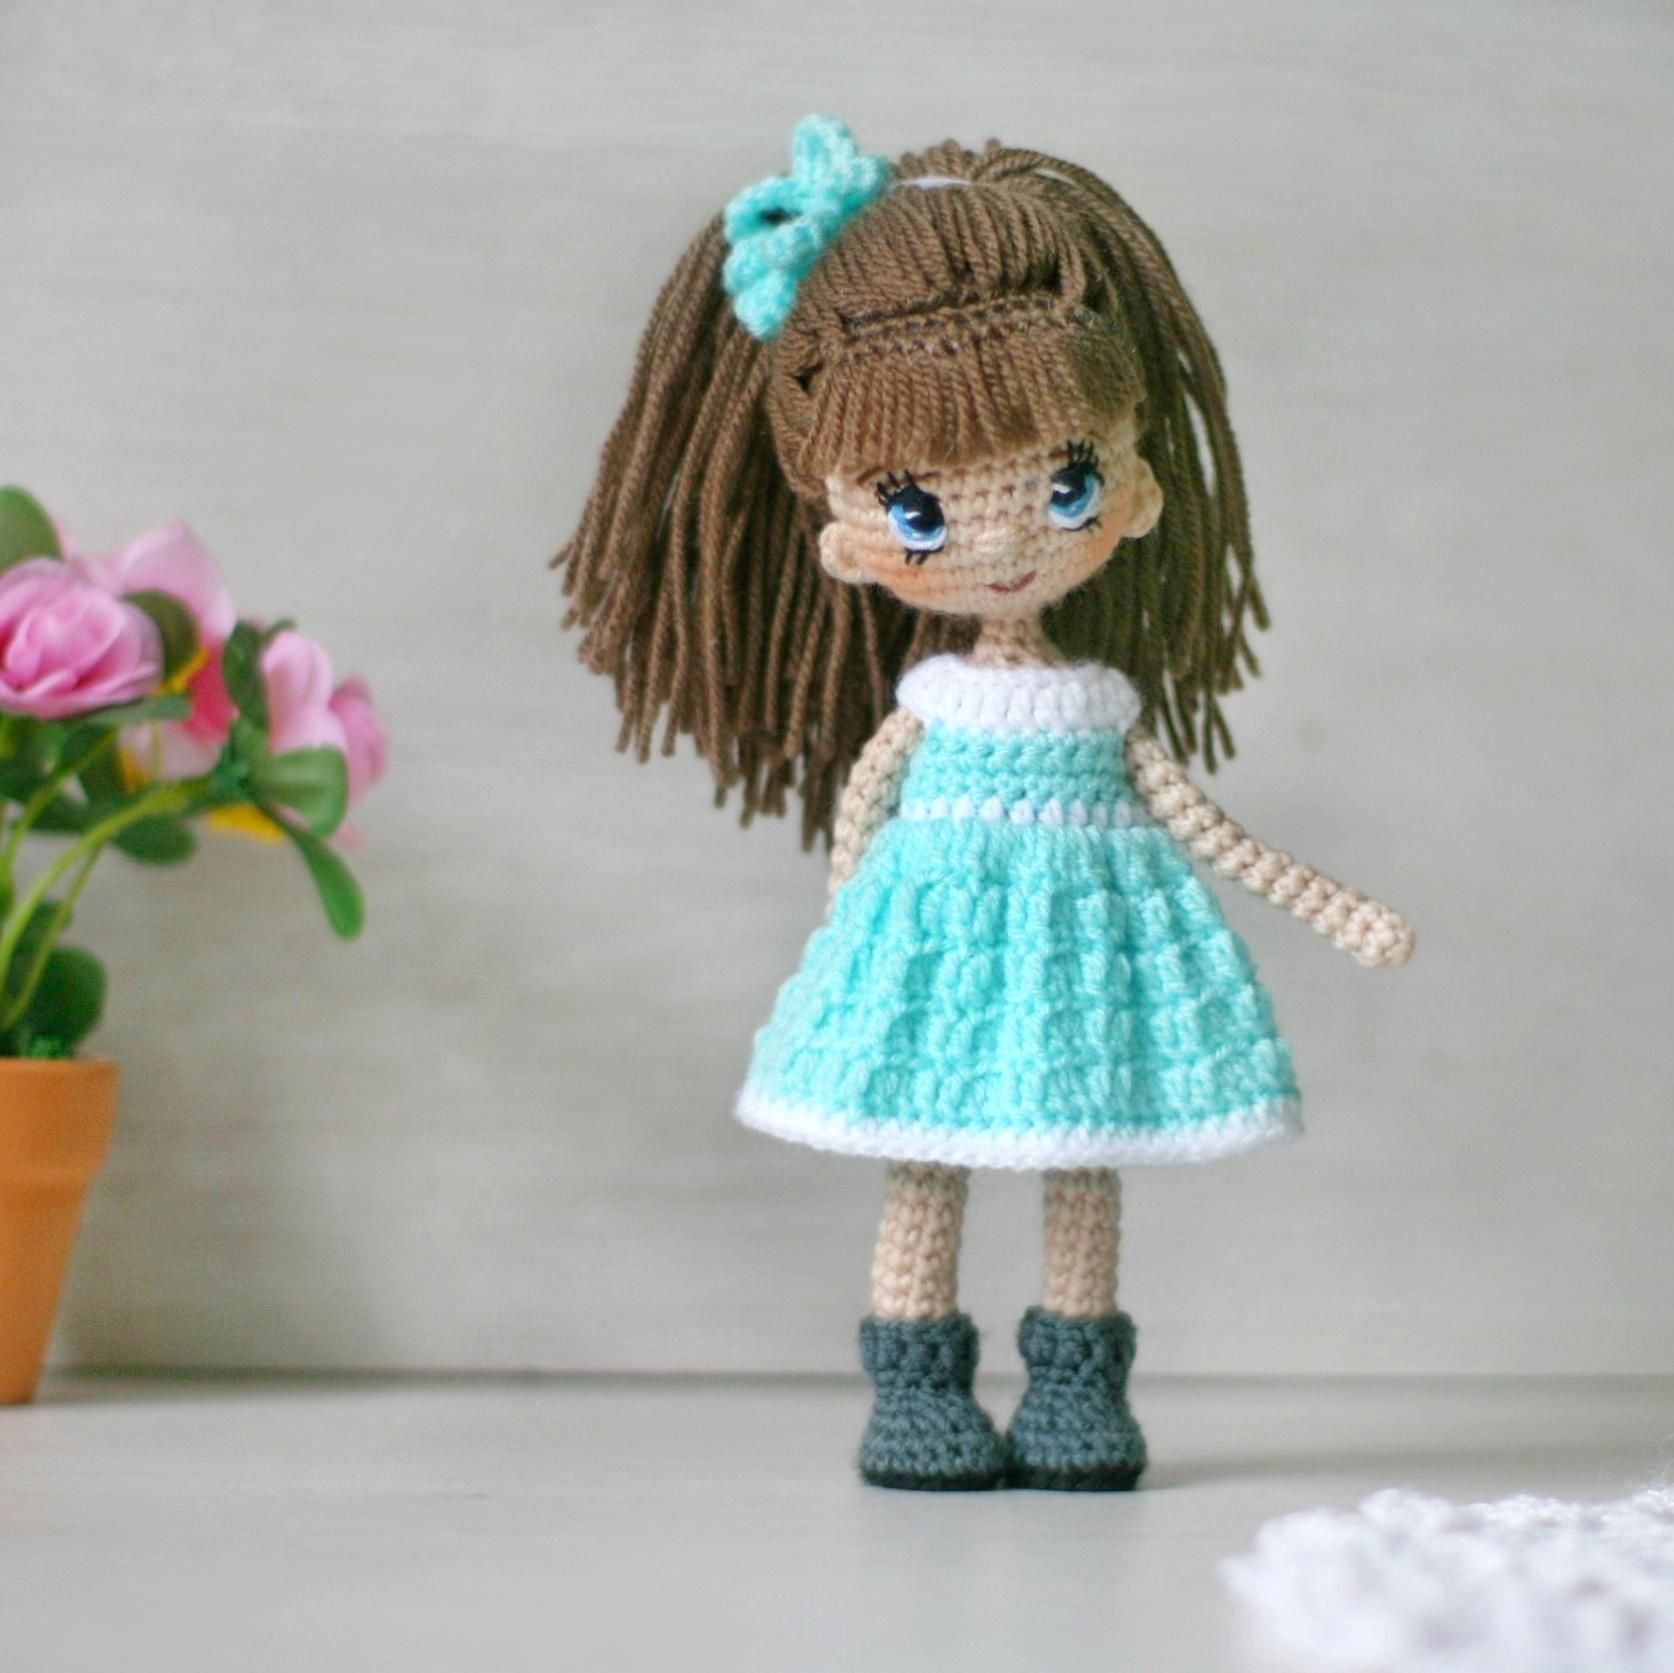 Вязаные куклы крючком — мастер-классы со схемами и описанием ручной работы для начинающих, фото идеи вязаных кукол